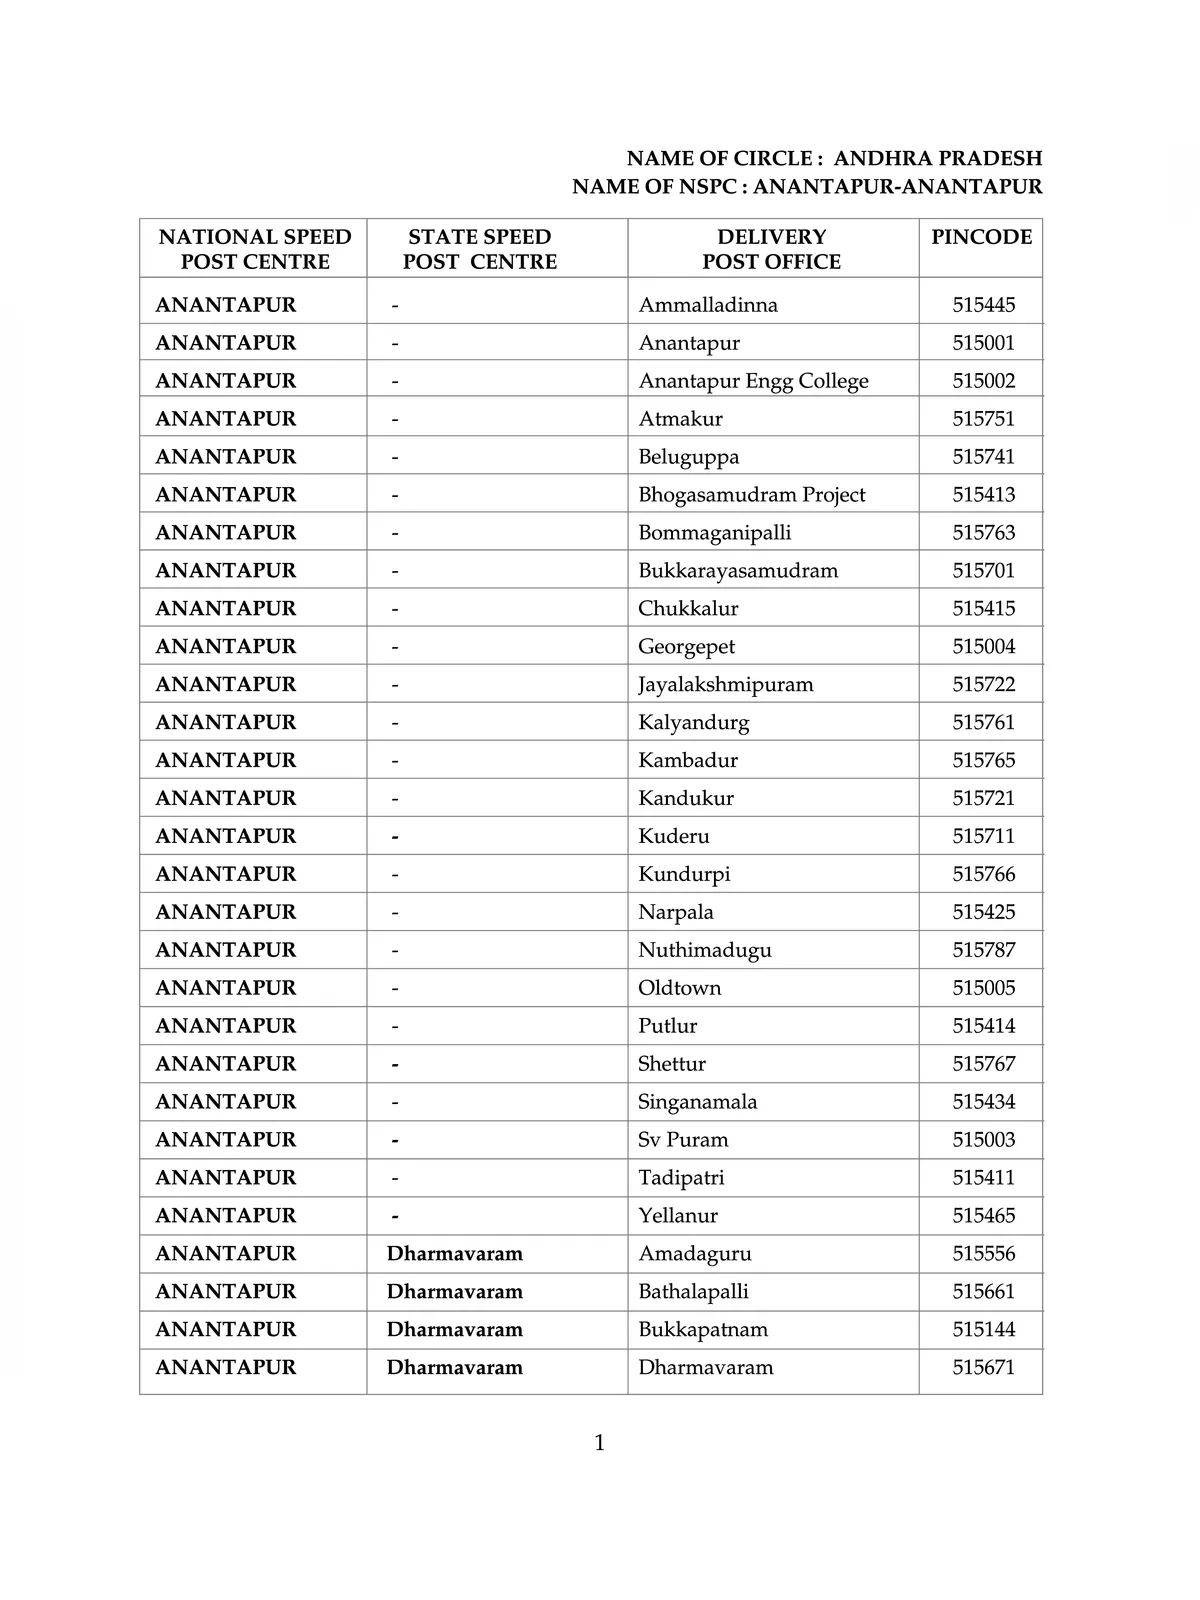 Andhra Pradesh Pin Code List